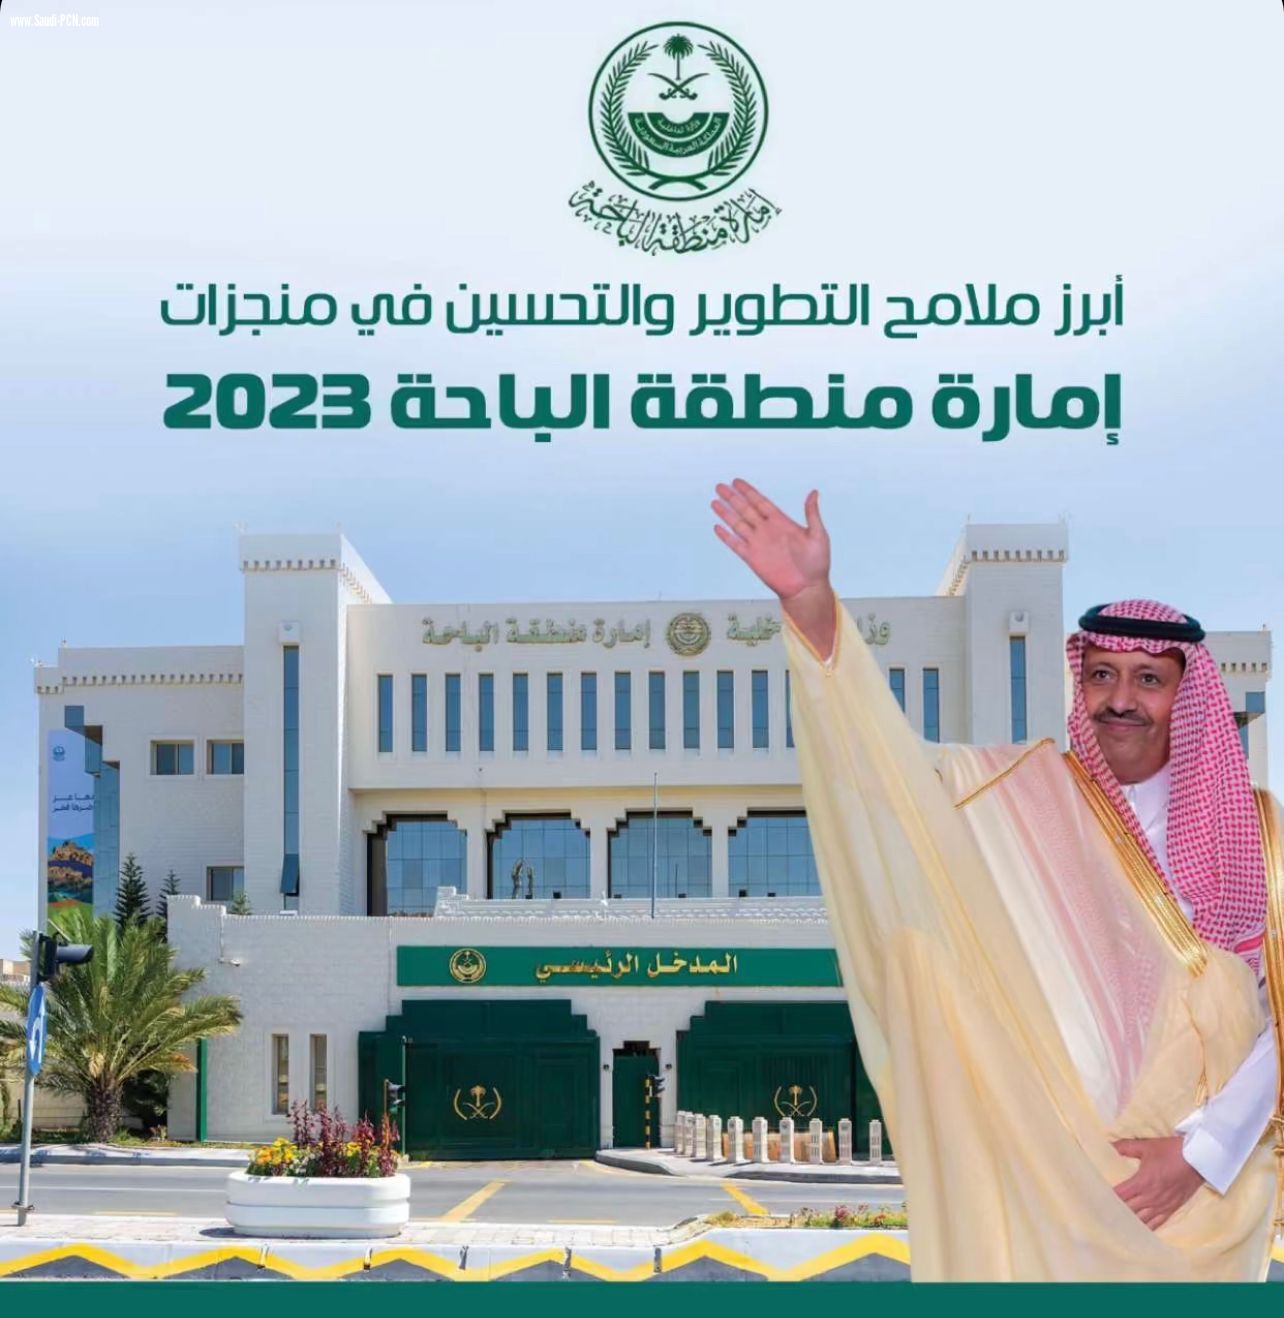 إمارة منطقة الباحة تحتفل بإنجازاتها في عام 2023